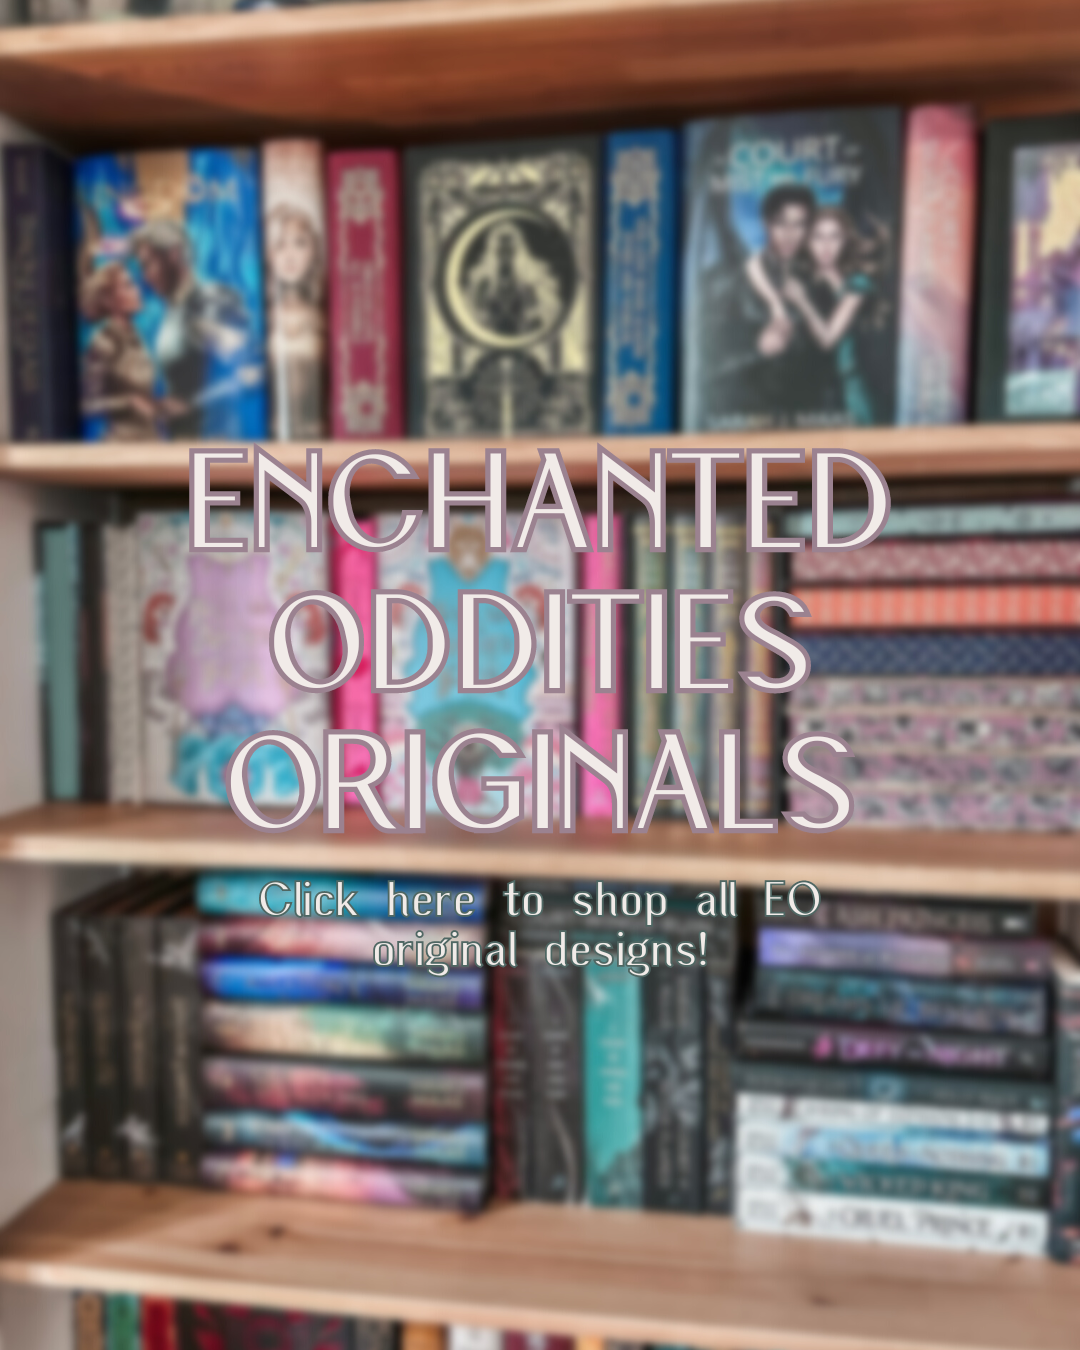 Enchanted Oddities Originals